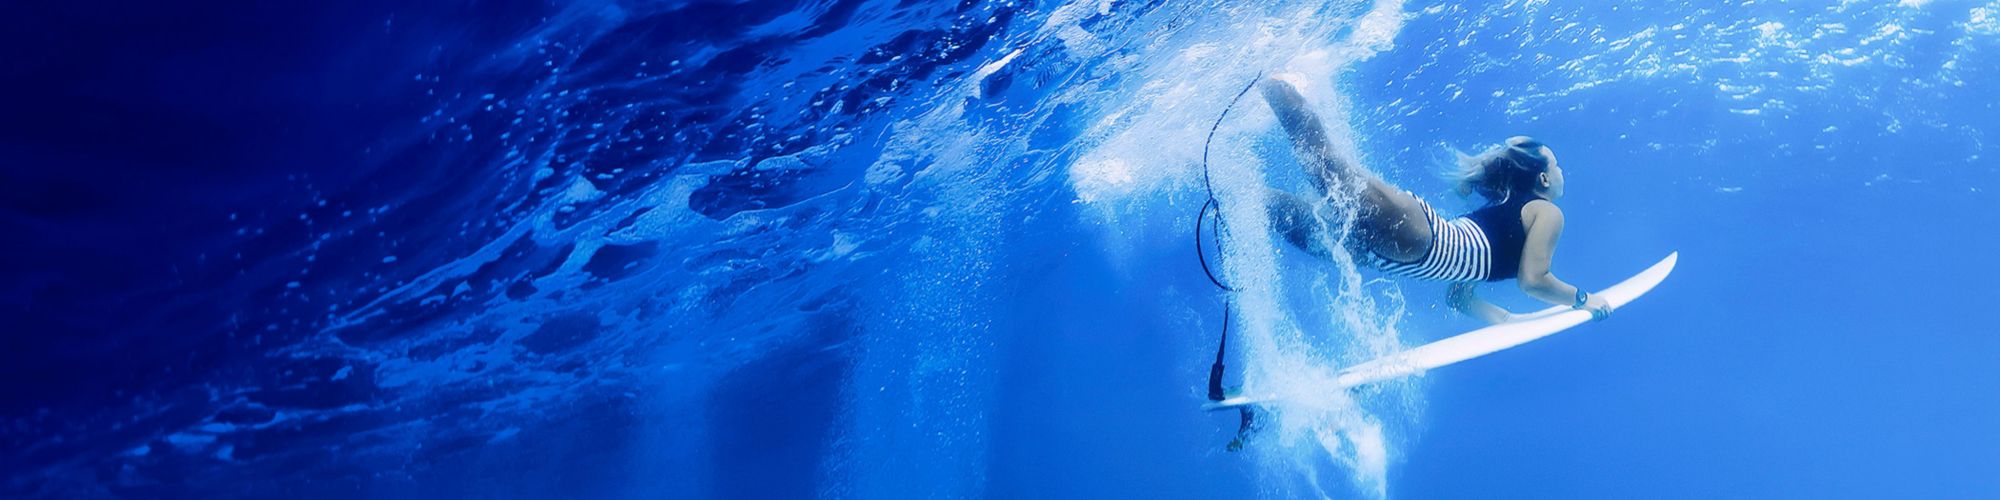 female surfer diving under wave